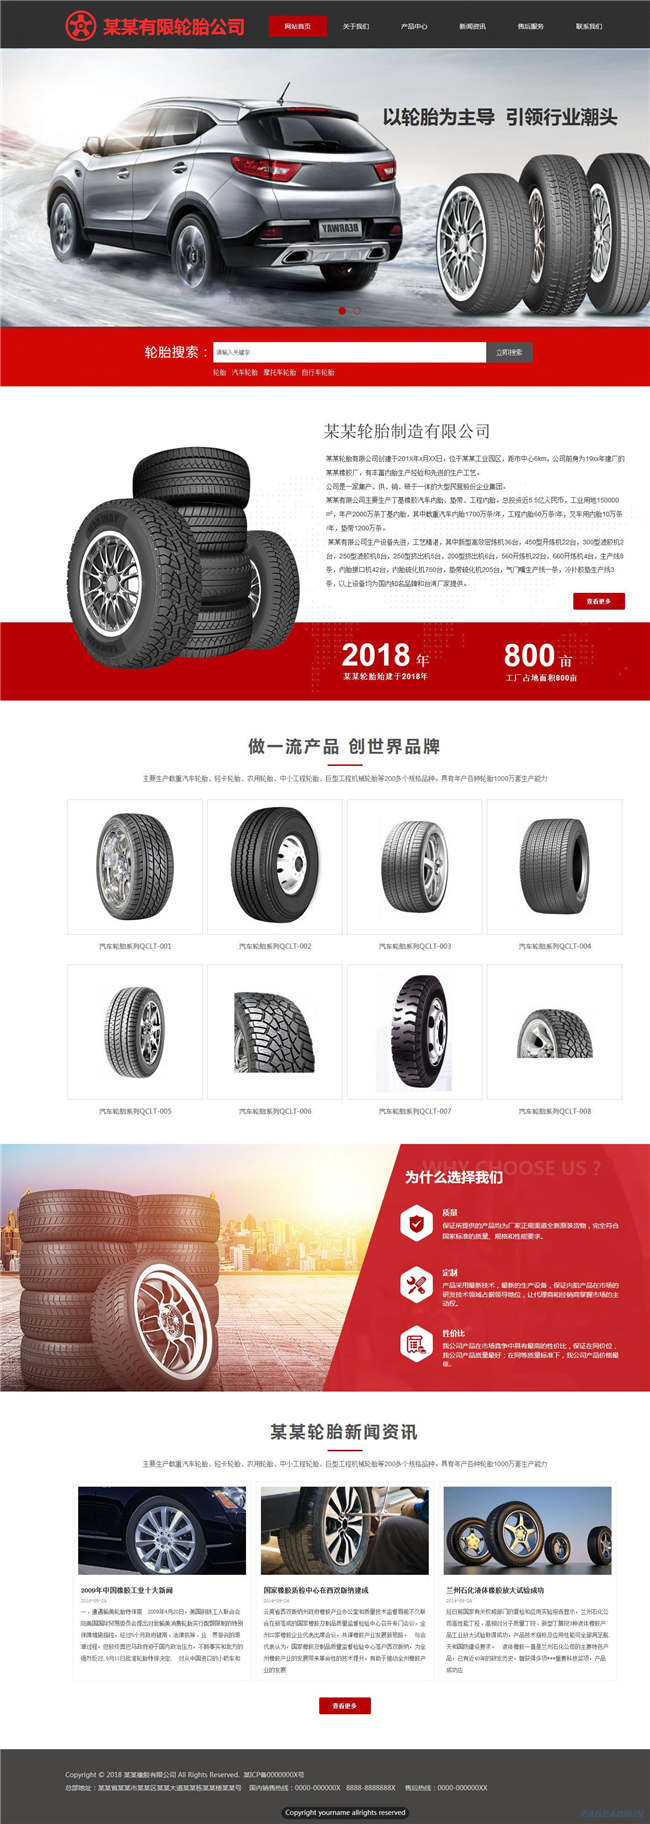 汽车轮胎公司汽配服务网站制作_网站建设模板演示图